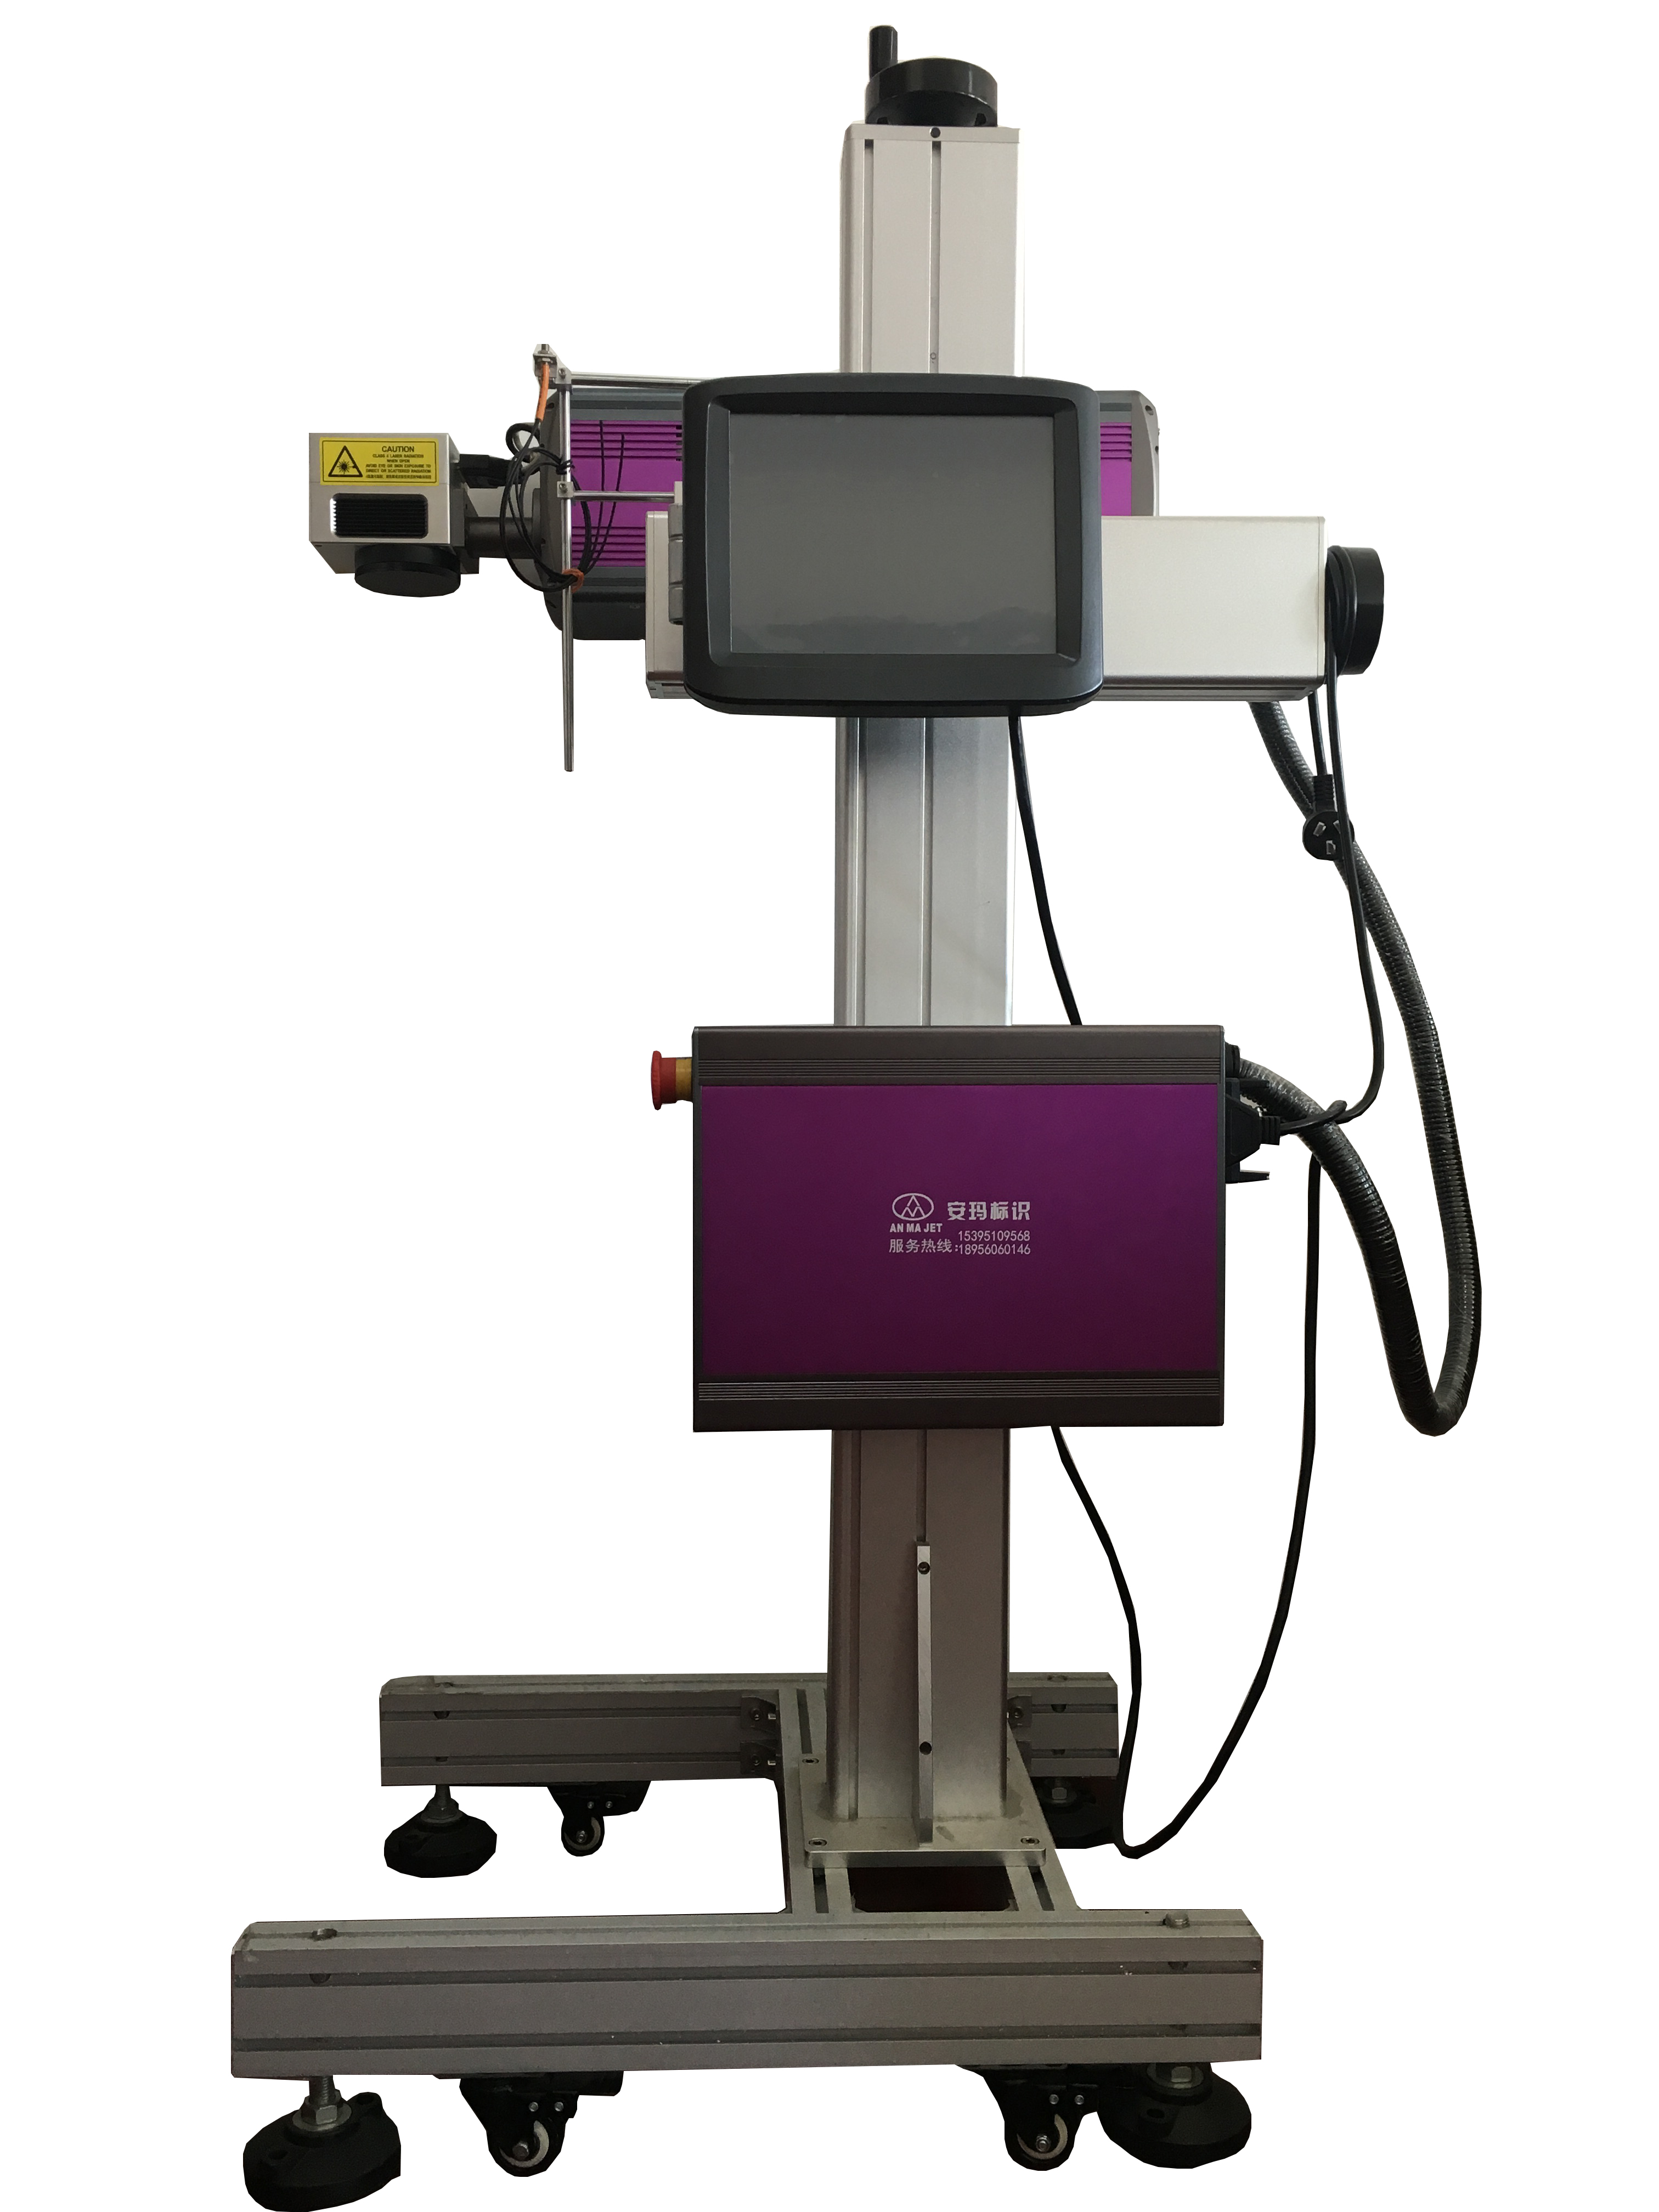 AM紫罗兰系列CO2激光喷码机(图1)